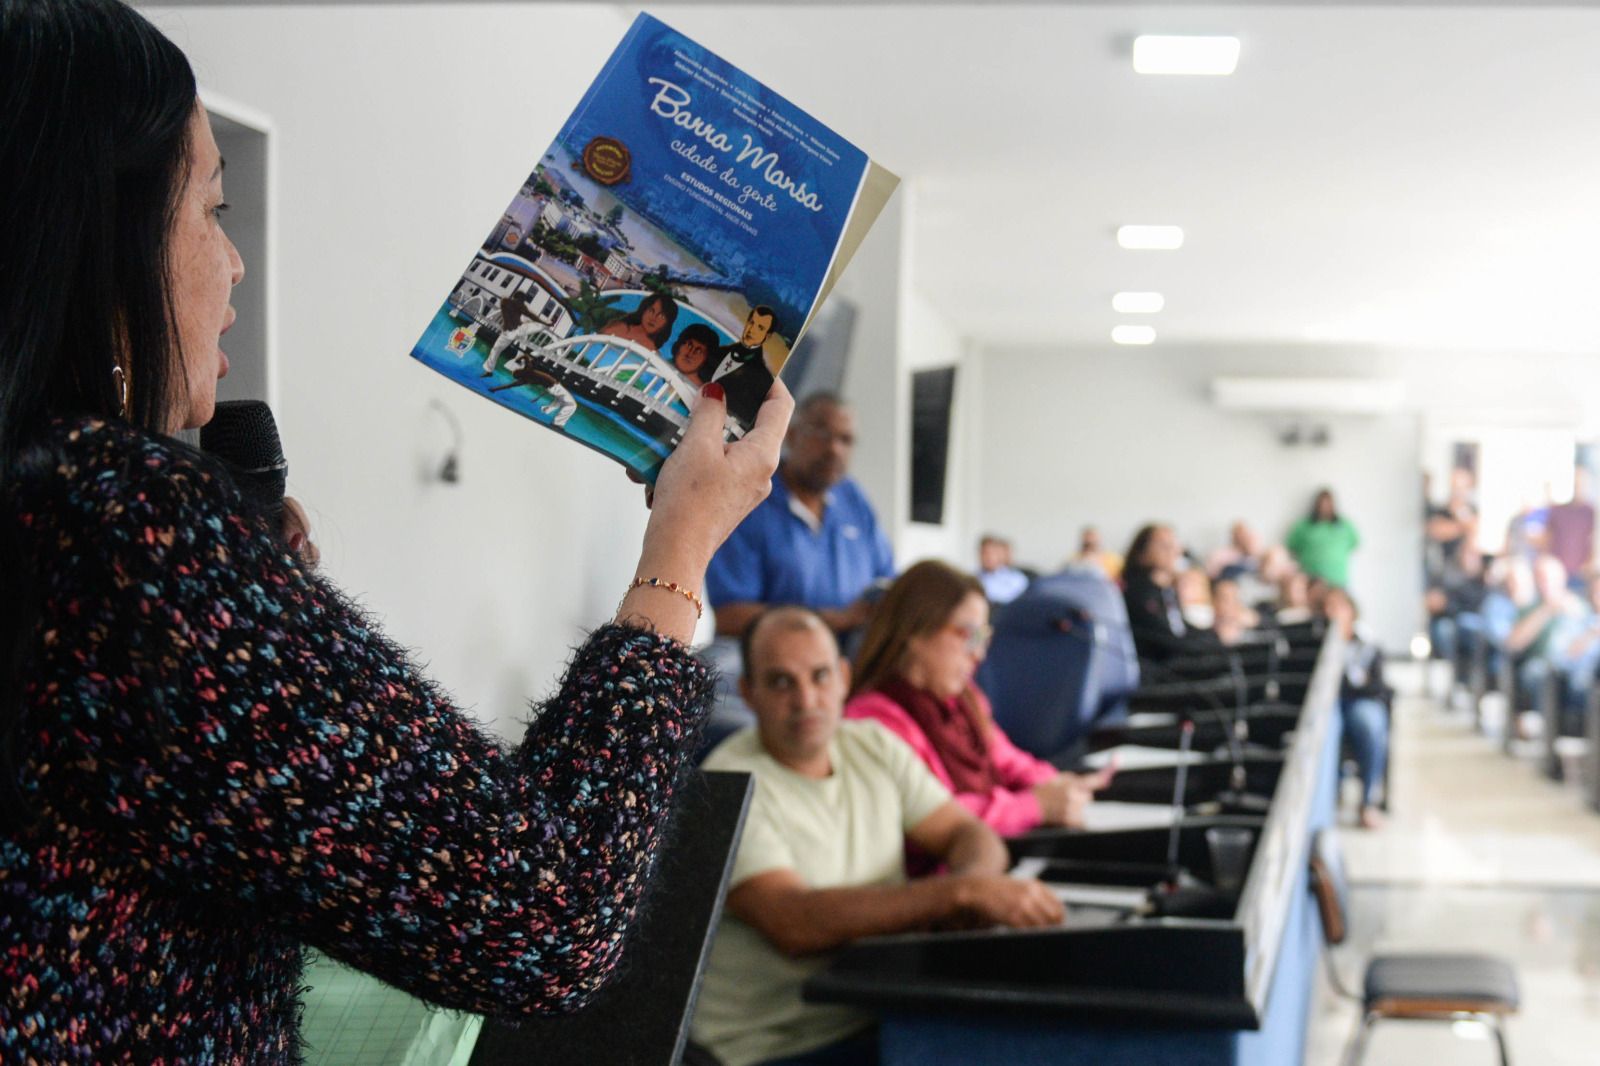 Autores dos livros ‘Barra Mansa – Cidade de Gente’ vão a Câmara e cobram explicações por falsas acusações feitas por vereador